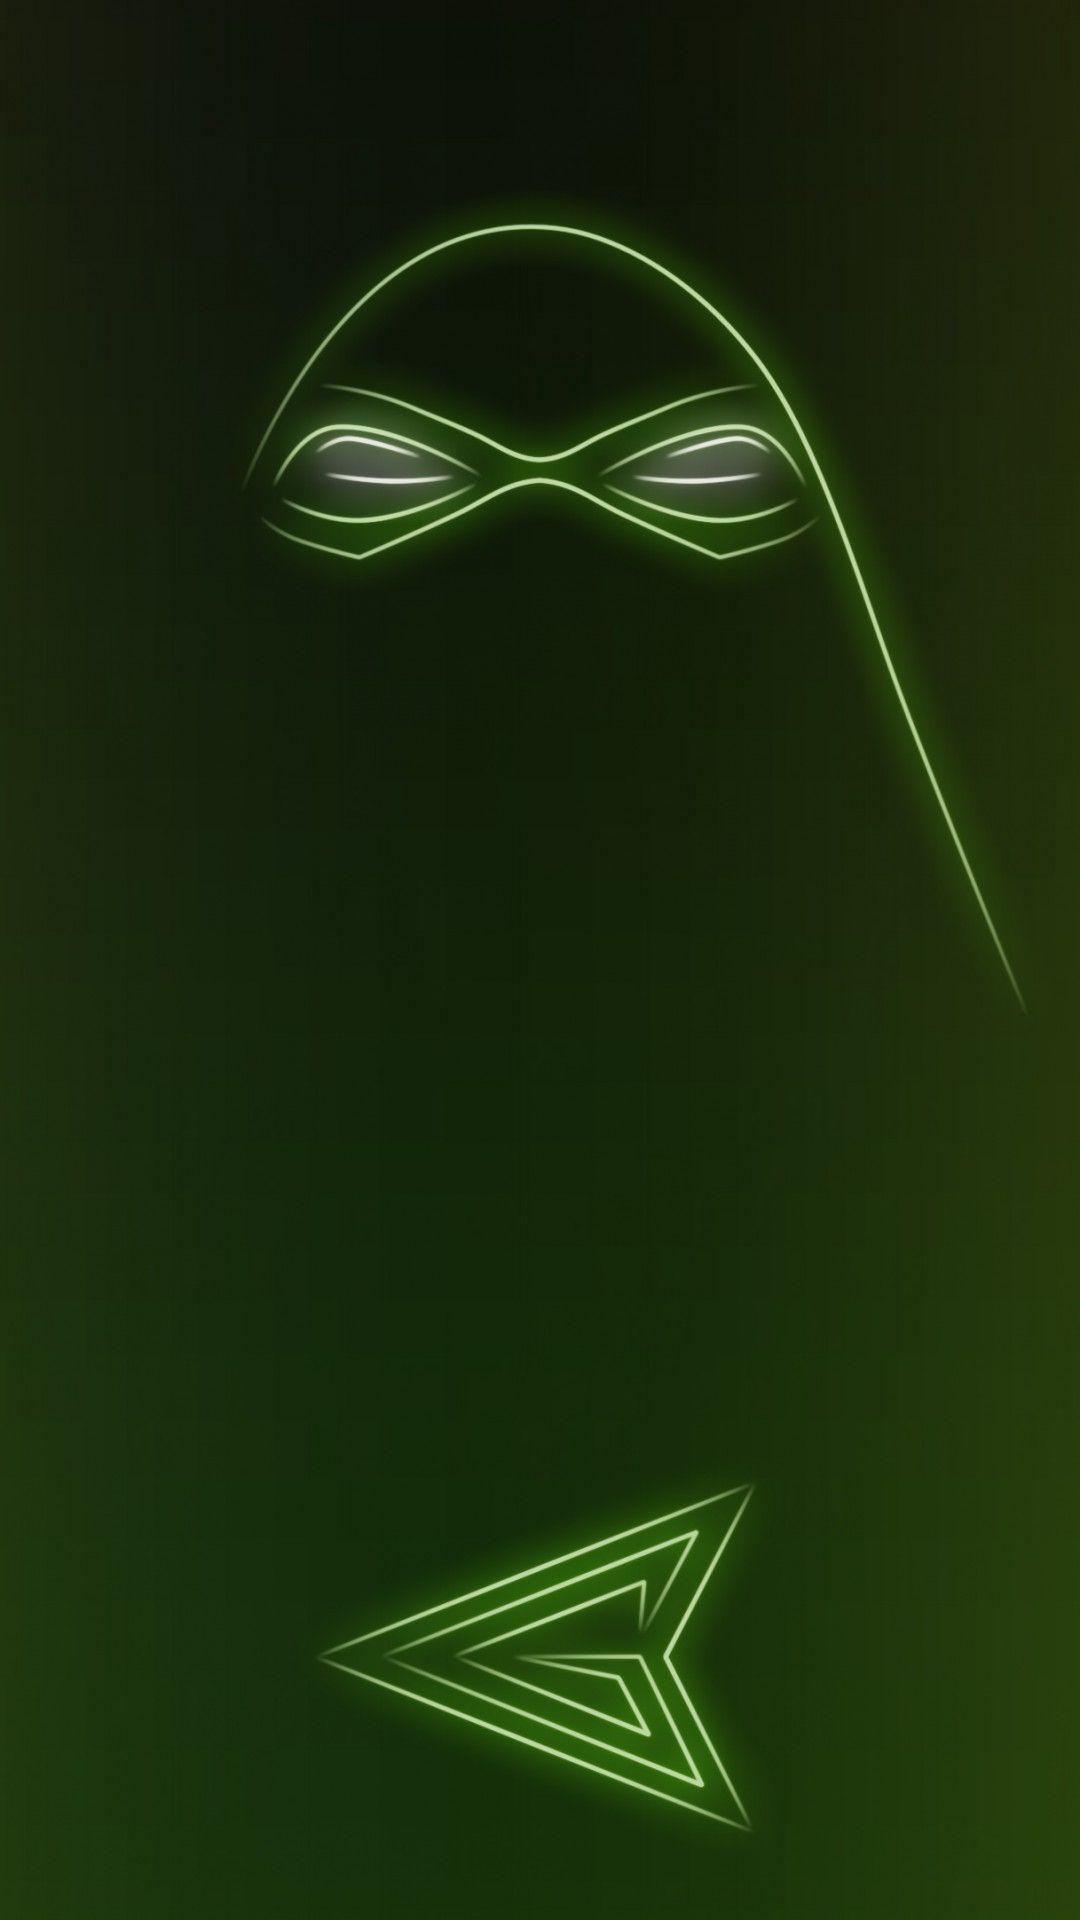 Download Neon Light Hero Green Arrow 1080 x 1920 Wallpaper